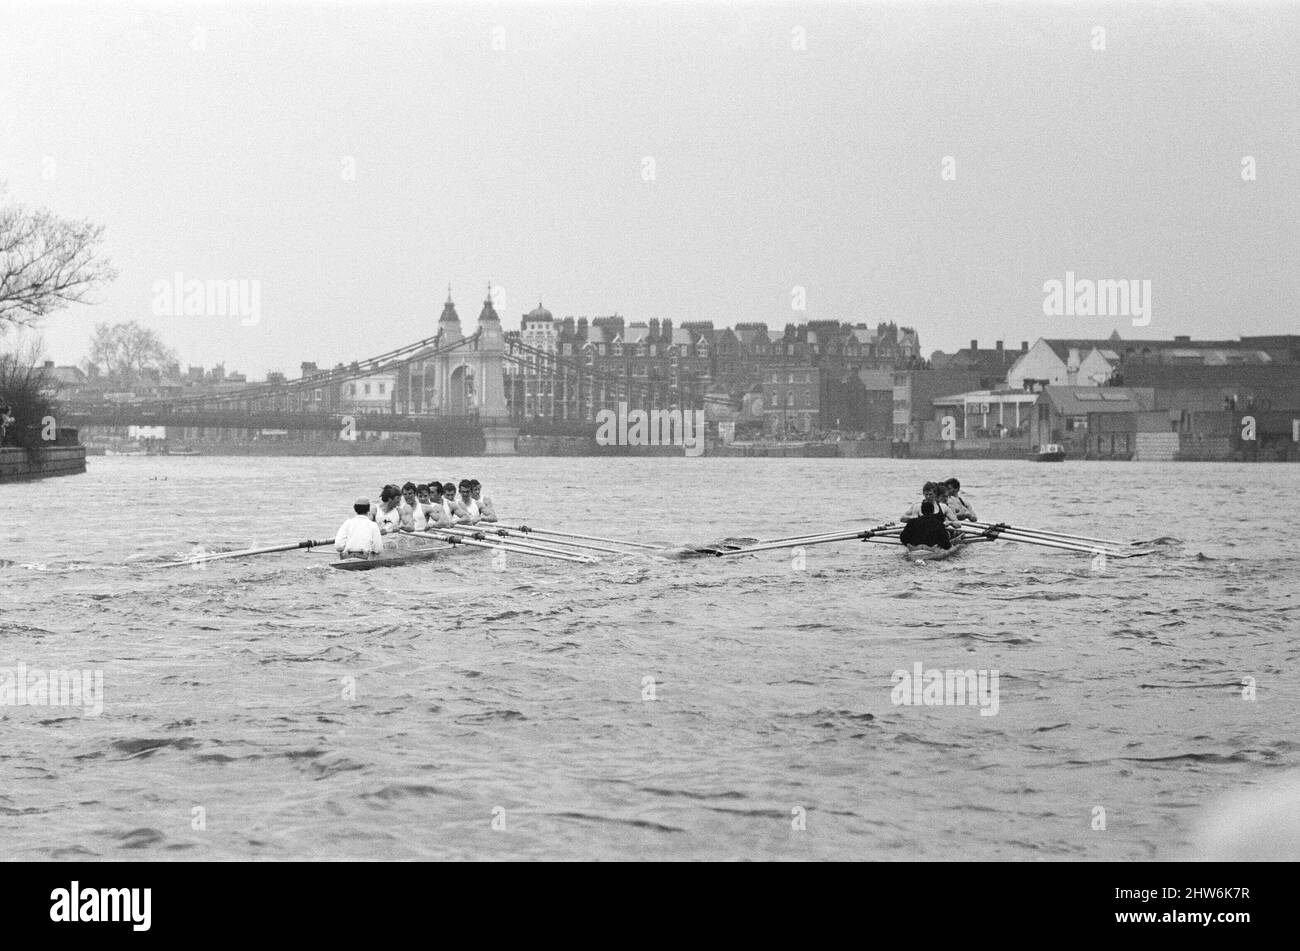 L'Oxford verses Cambridge Boat Race, sul Tamigi, marzo 1968. L'immagine mostra i canoe che si avvicinano al Ponte Hammersmith. La gara di imbarcazioni 114th si è svolta il 30 marzo 1968. L'evento si svolge ogni anno in una gara di canottaggio affiancata tra gli equipaggi delle università di Oxford e Cambridge lungo il Tamigi. La gara, umpita da Harold Rickett, è stata vinta da Cambridge per tre lunghezze e mezzo. Goldie ha vinto la gara di riserva e Cambridge ha vinto la gara di barca femminile. La gara si è svolta dal punto di partenza a Putney Bridge sul Tamigi a Londra, fino al traguardo a Chiswick BRI Foto Stock